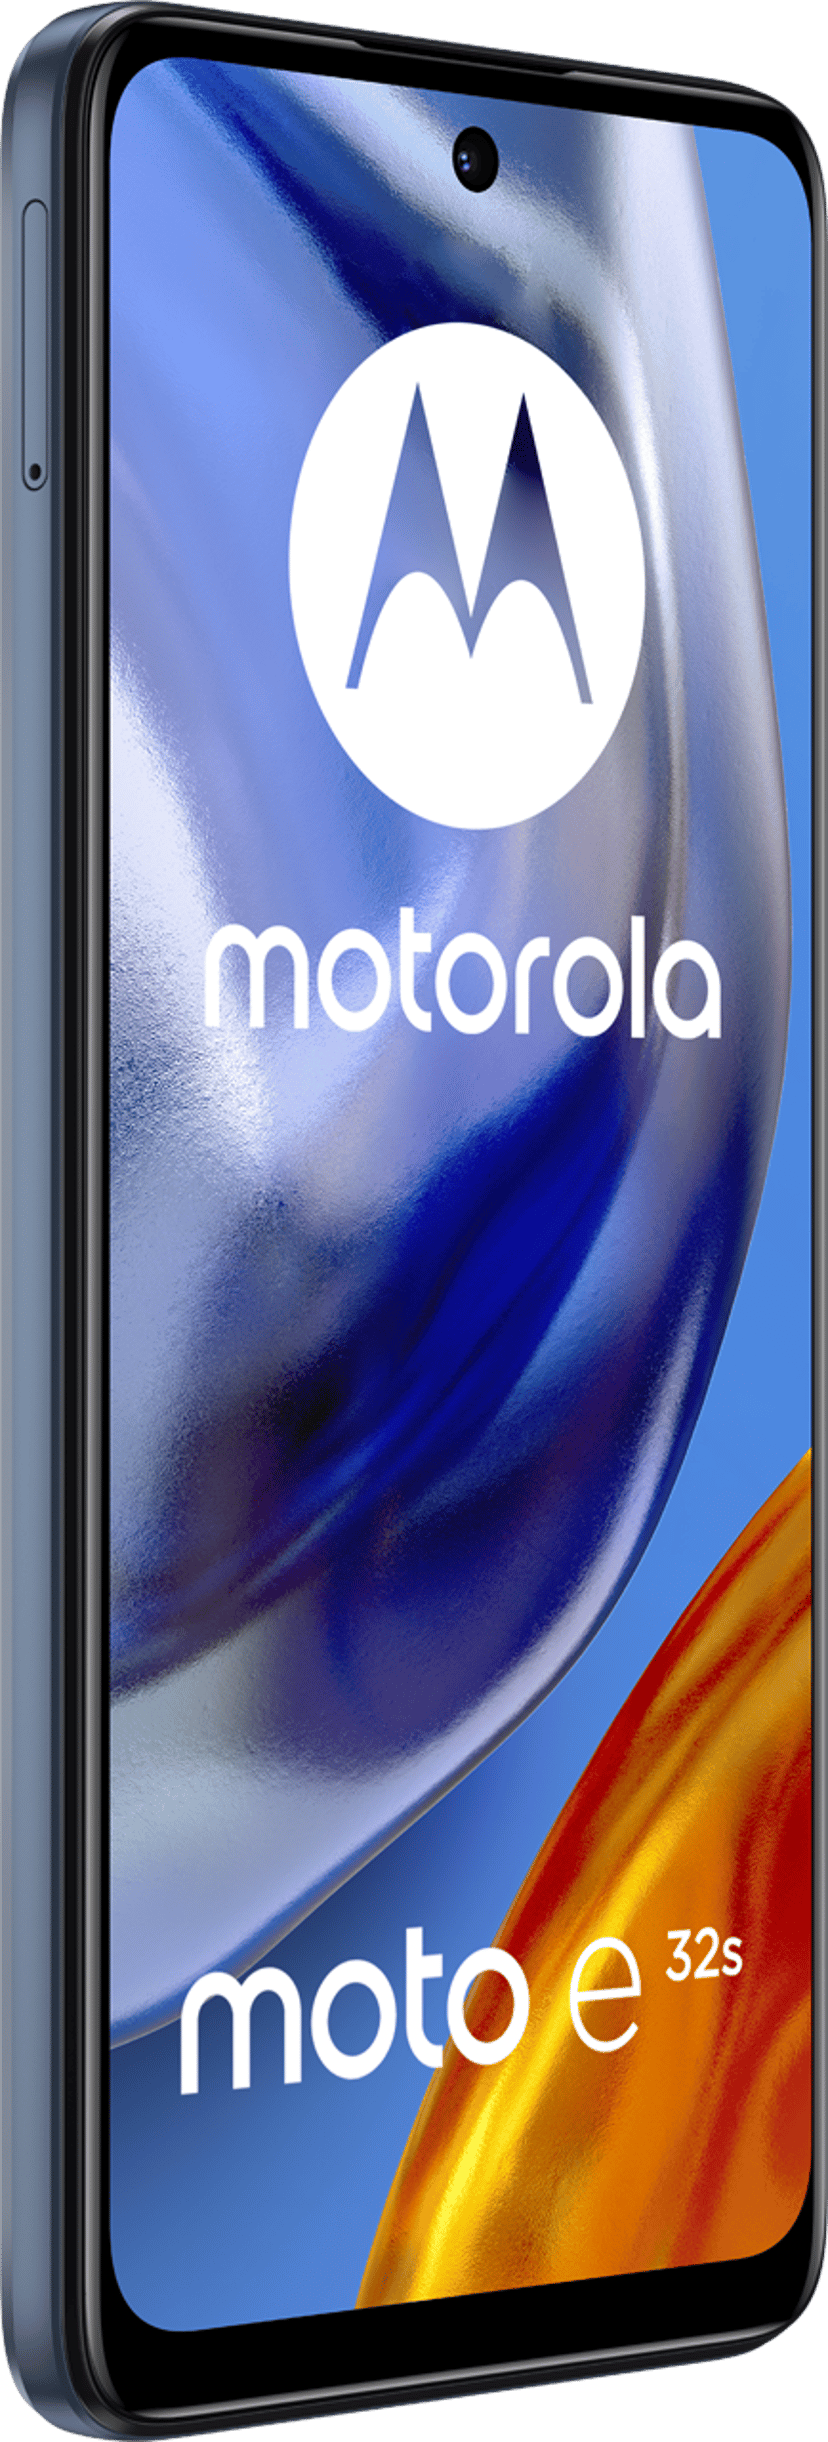 Motorola Moto E32s 32GB Dual-SIM Skiffergrå | Dustin.se